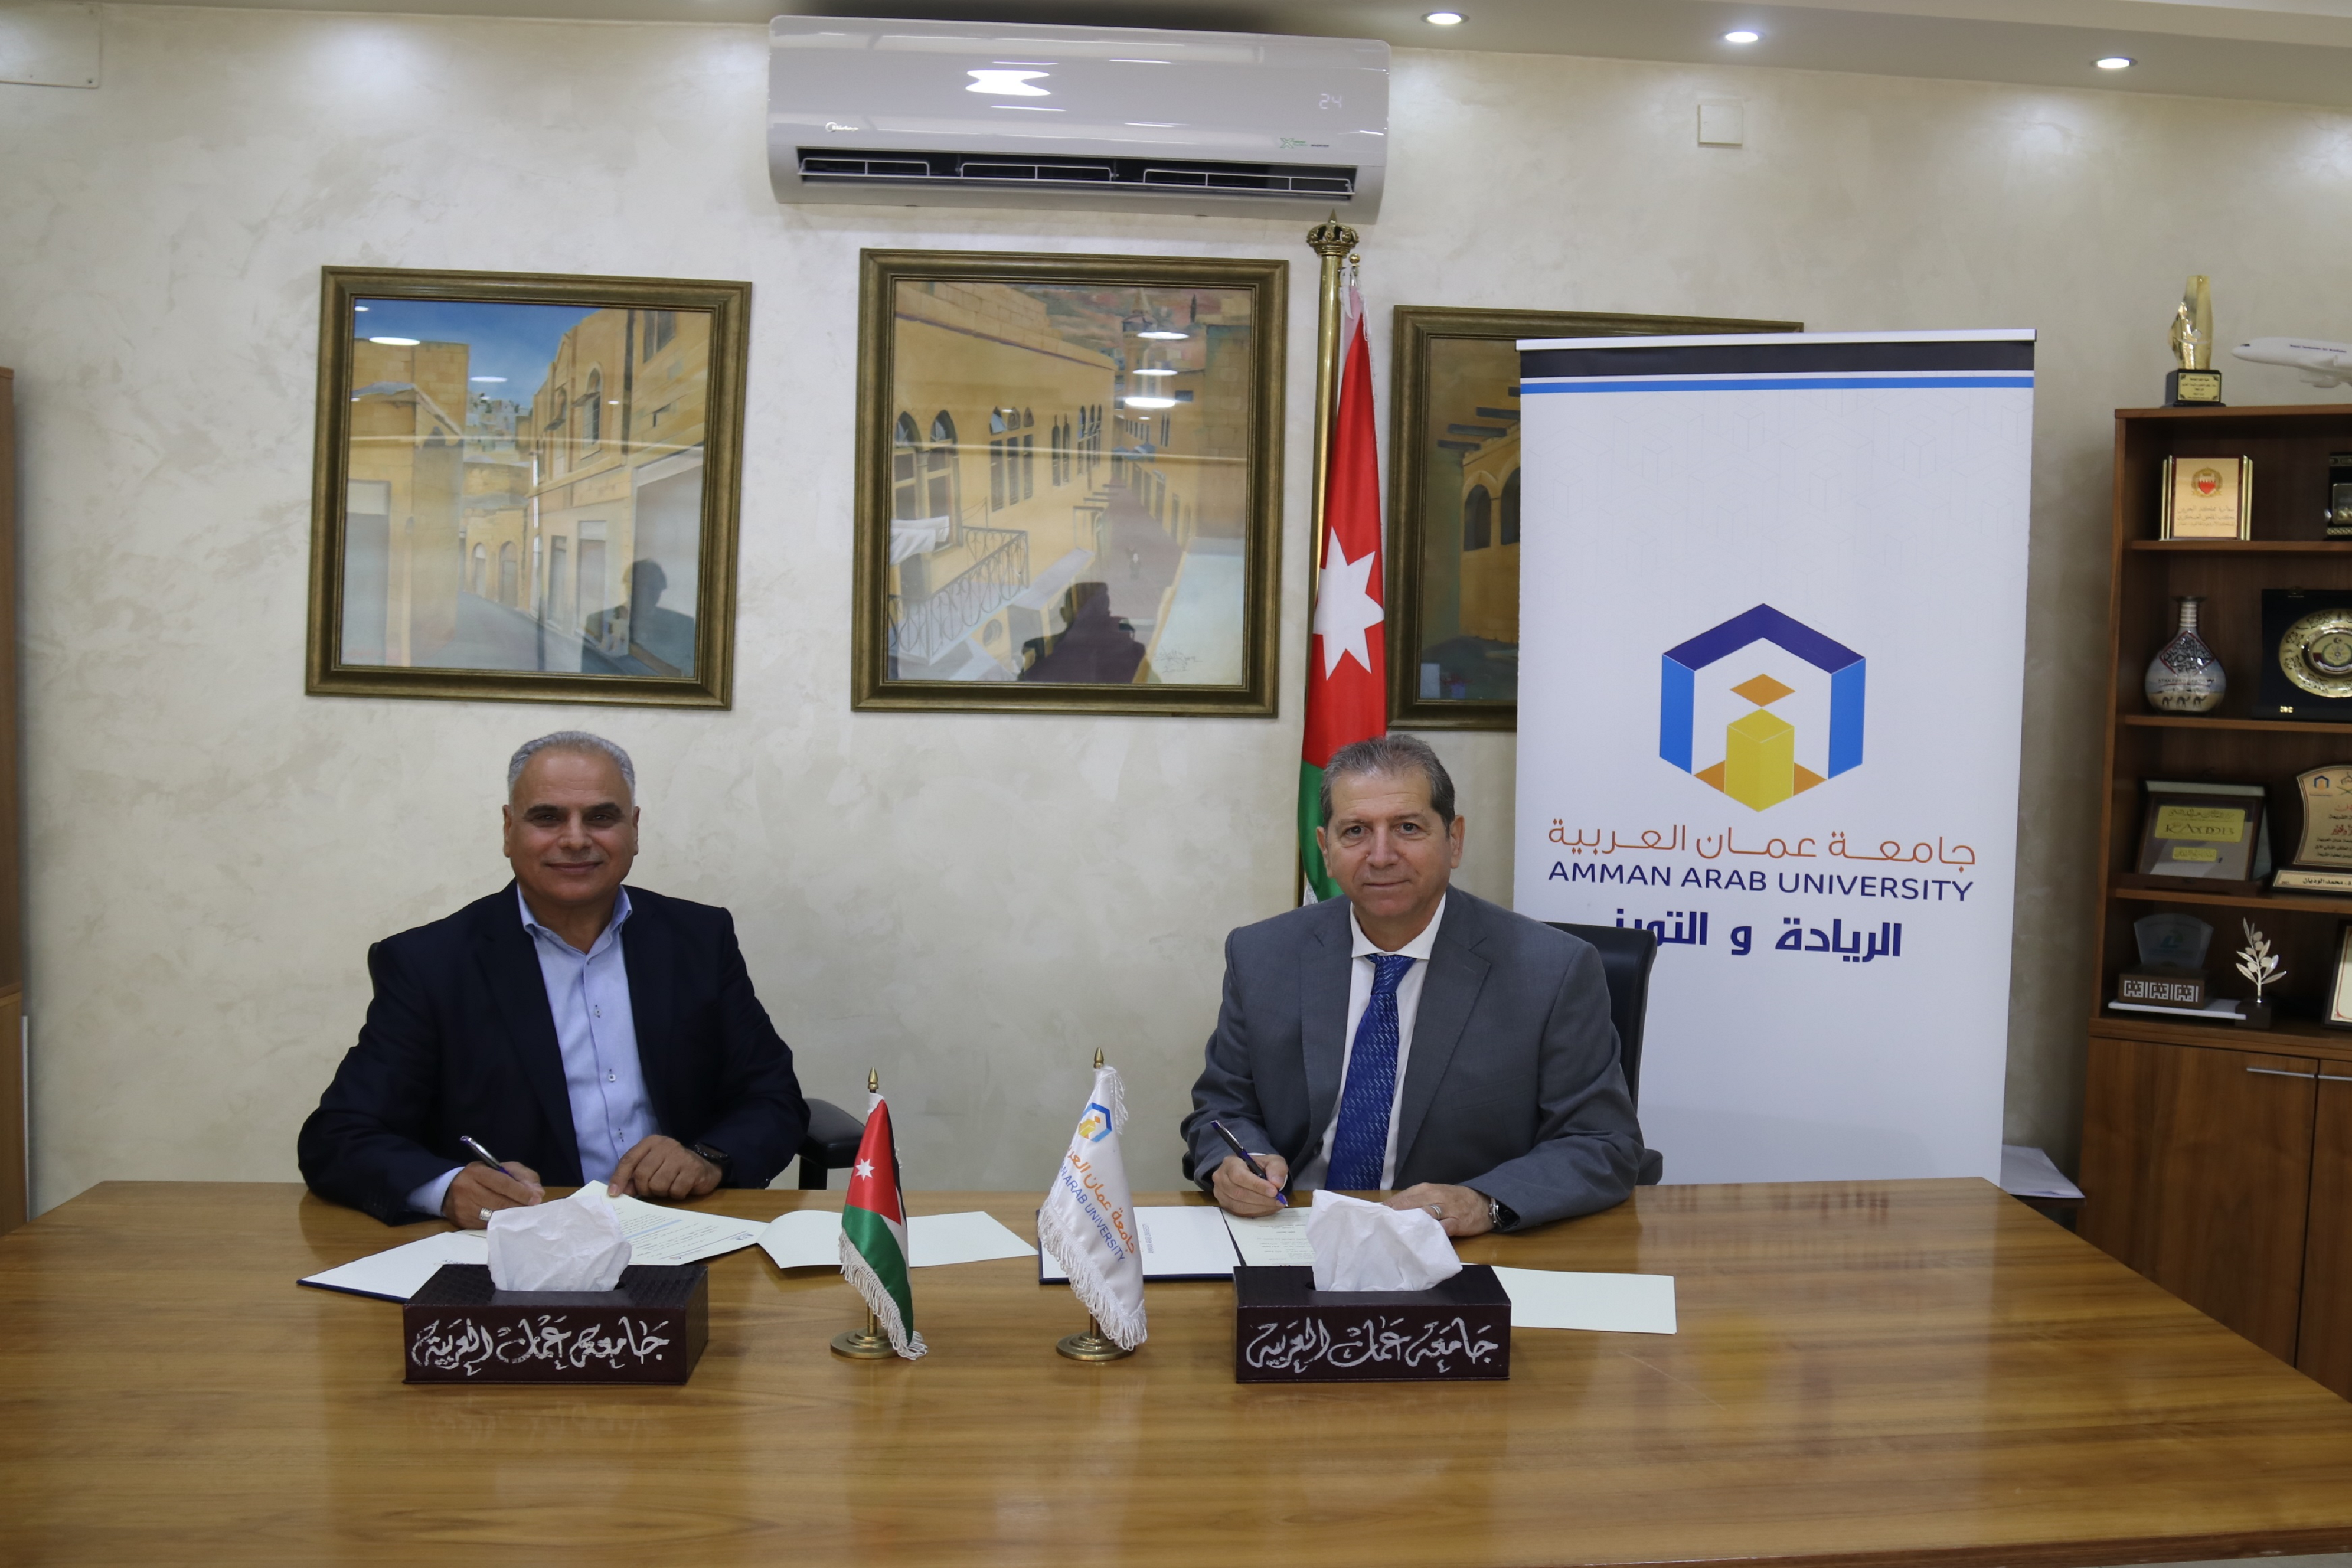 اتفاقية تعاون مشترك بين جامعة عمان العربية وأكاديمية إدارة للدراسات والتطوير الإداري2